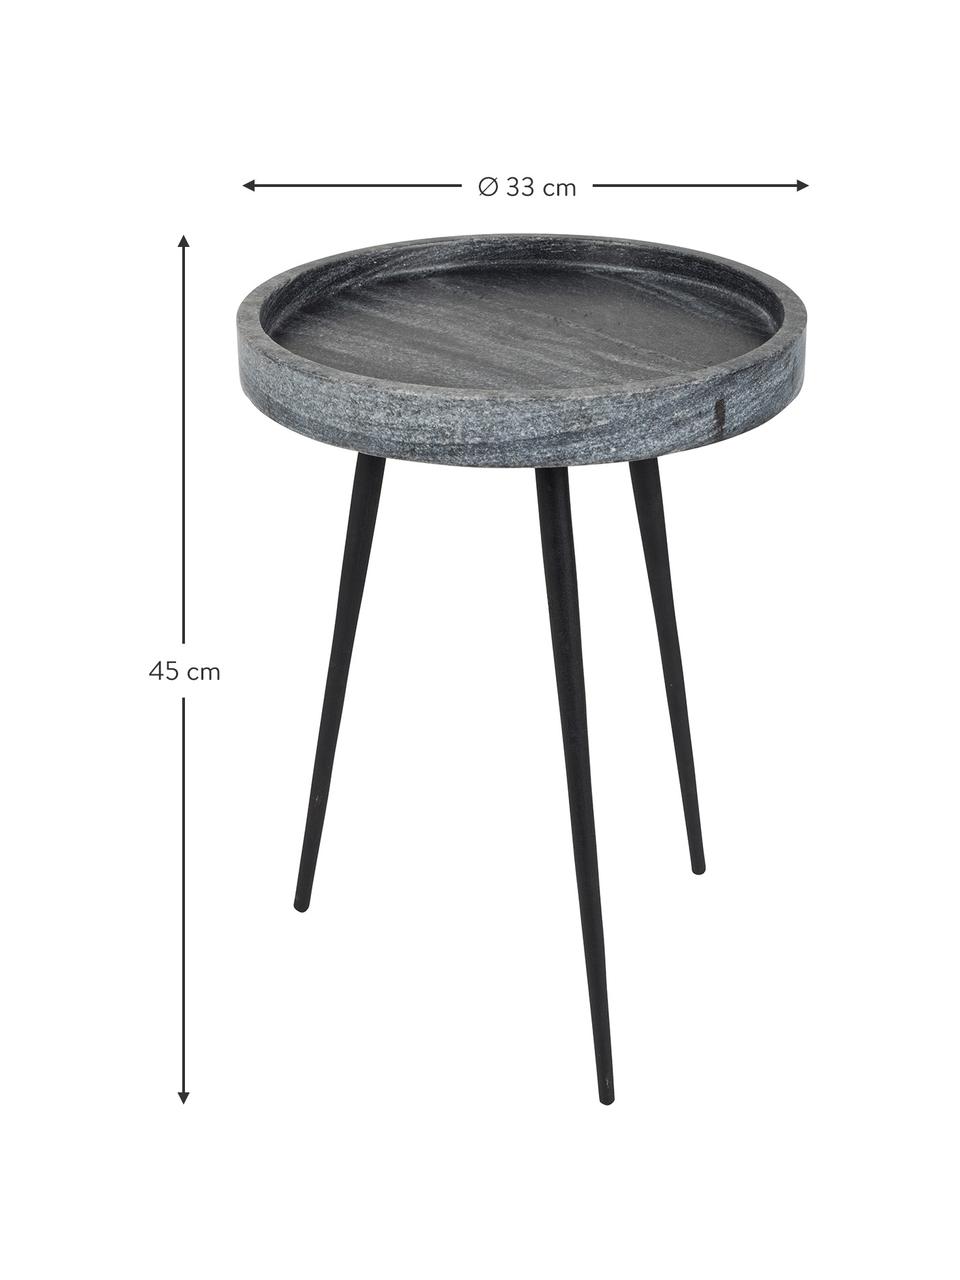 Runder Marmor-Beistelltisch Karrara, Tischplatte: Marmor, Beine: Metall, pulverbeschichtet, Grau, Schwarz, Ø 33 x H 45 cm